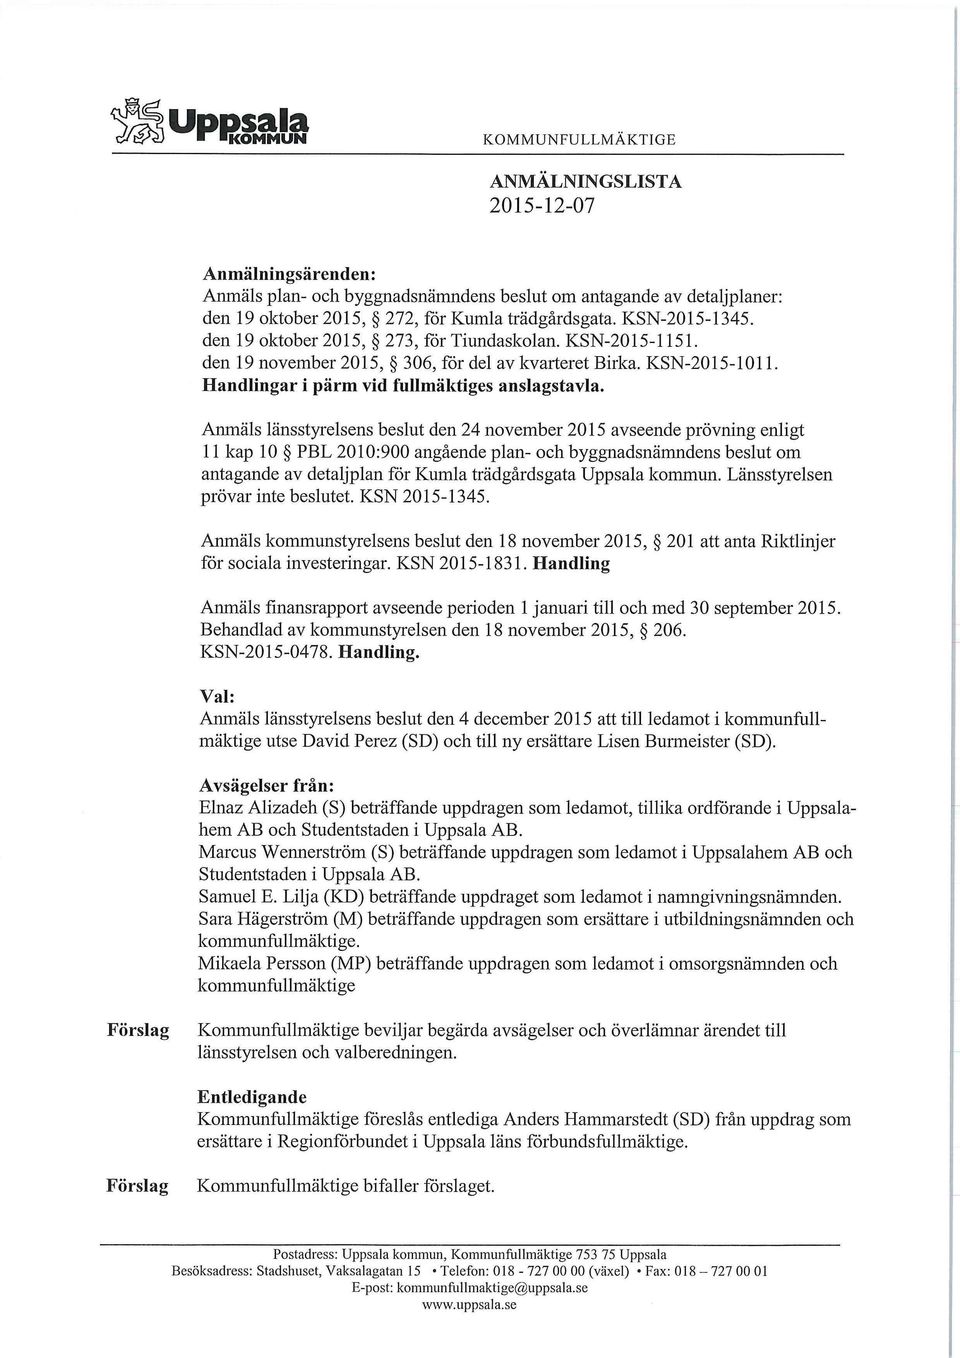 Anmäls länsstyrelsens beslut den 24 november 2015 avseende prövning enligt 11 kap 10 PBL 2010:900 angående plan- och byggnadsnämndens beslut om antagande av detaljplan för Kumla trädgårdsgata Uppsala